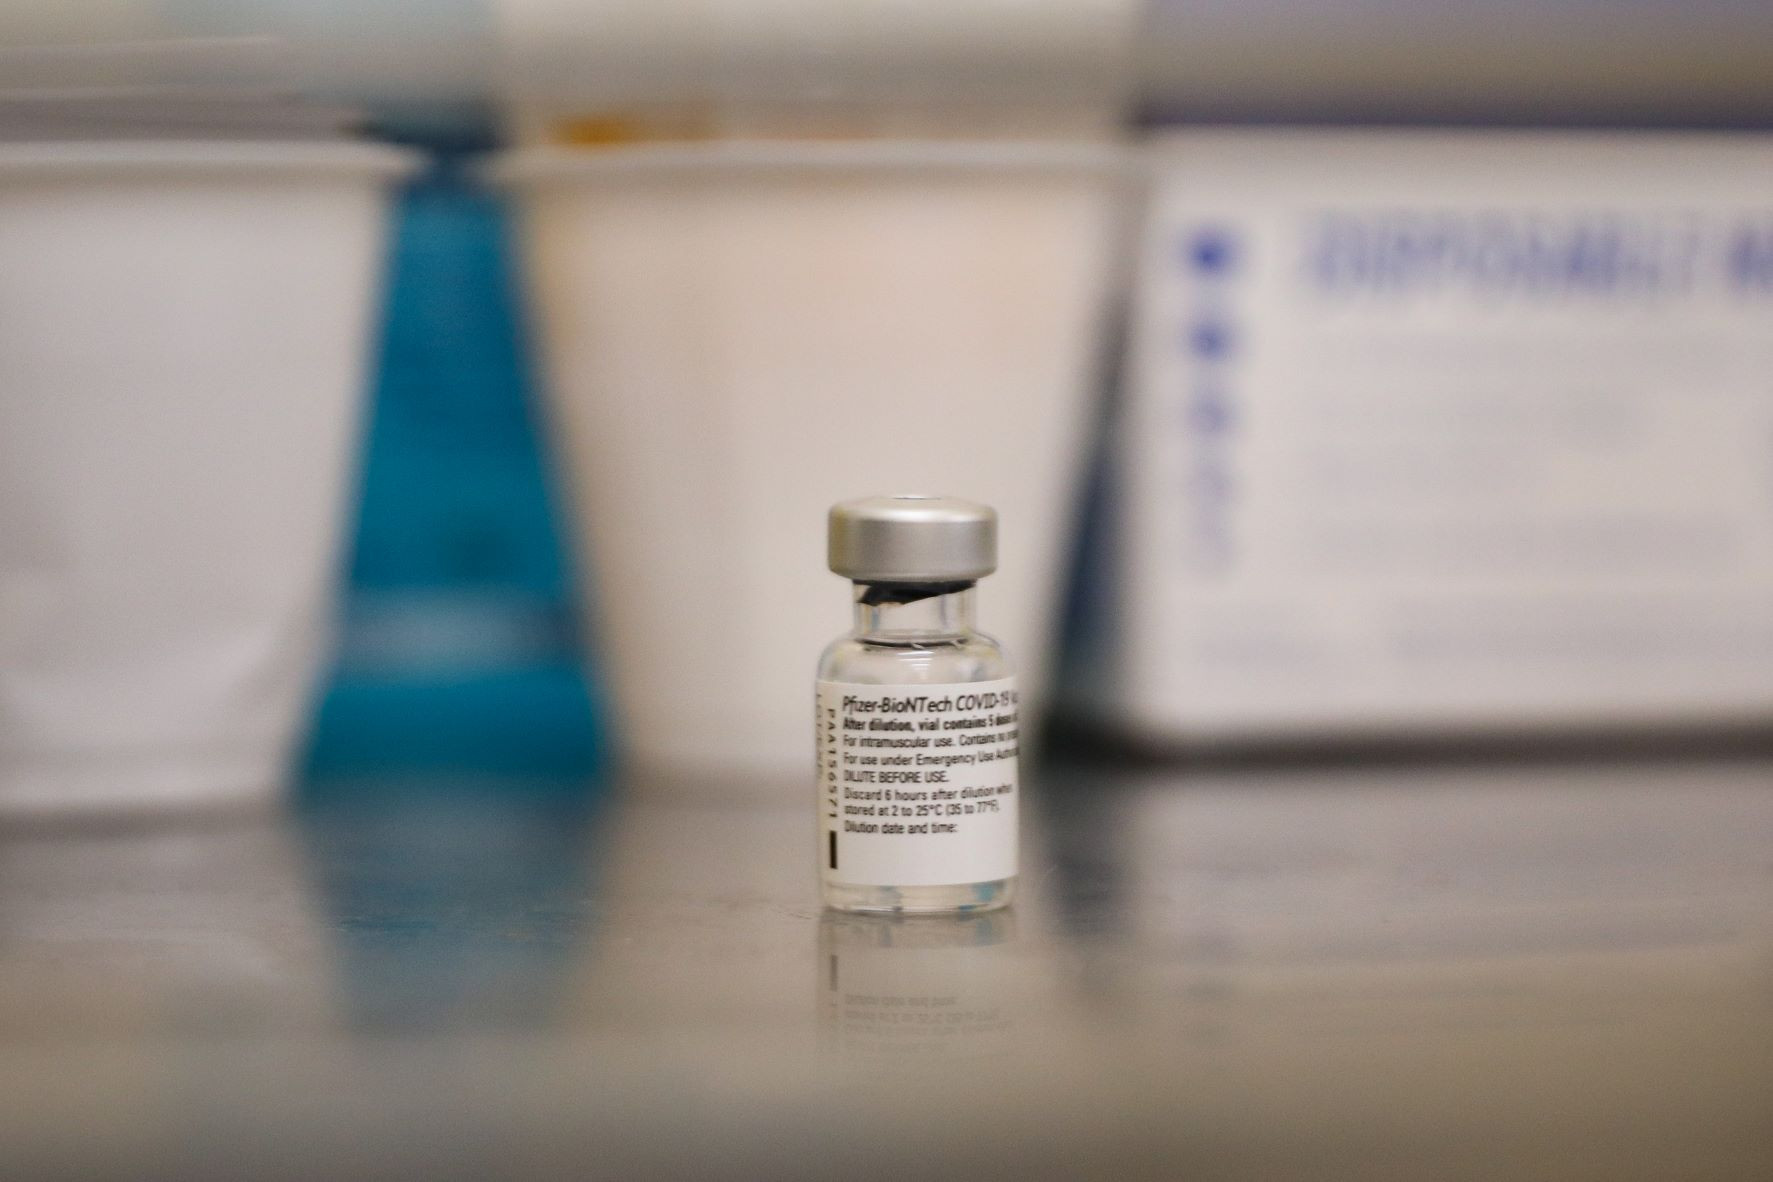 Η Pfizer θα επιτρέψει γενόσημες εκδοχές του χαπιού της κατά της Covid-19 σε 95 χώρες